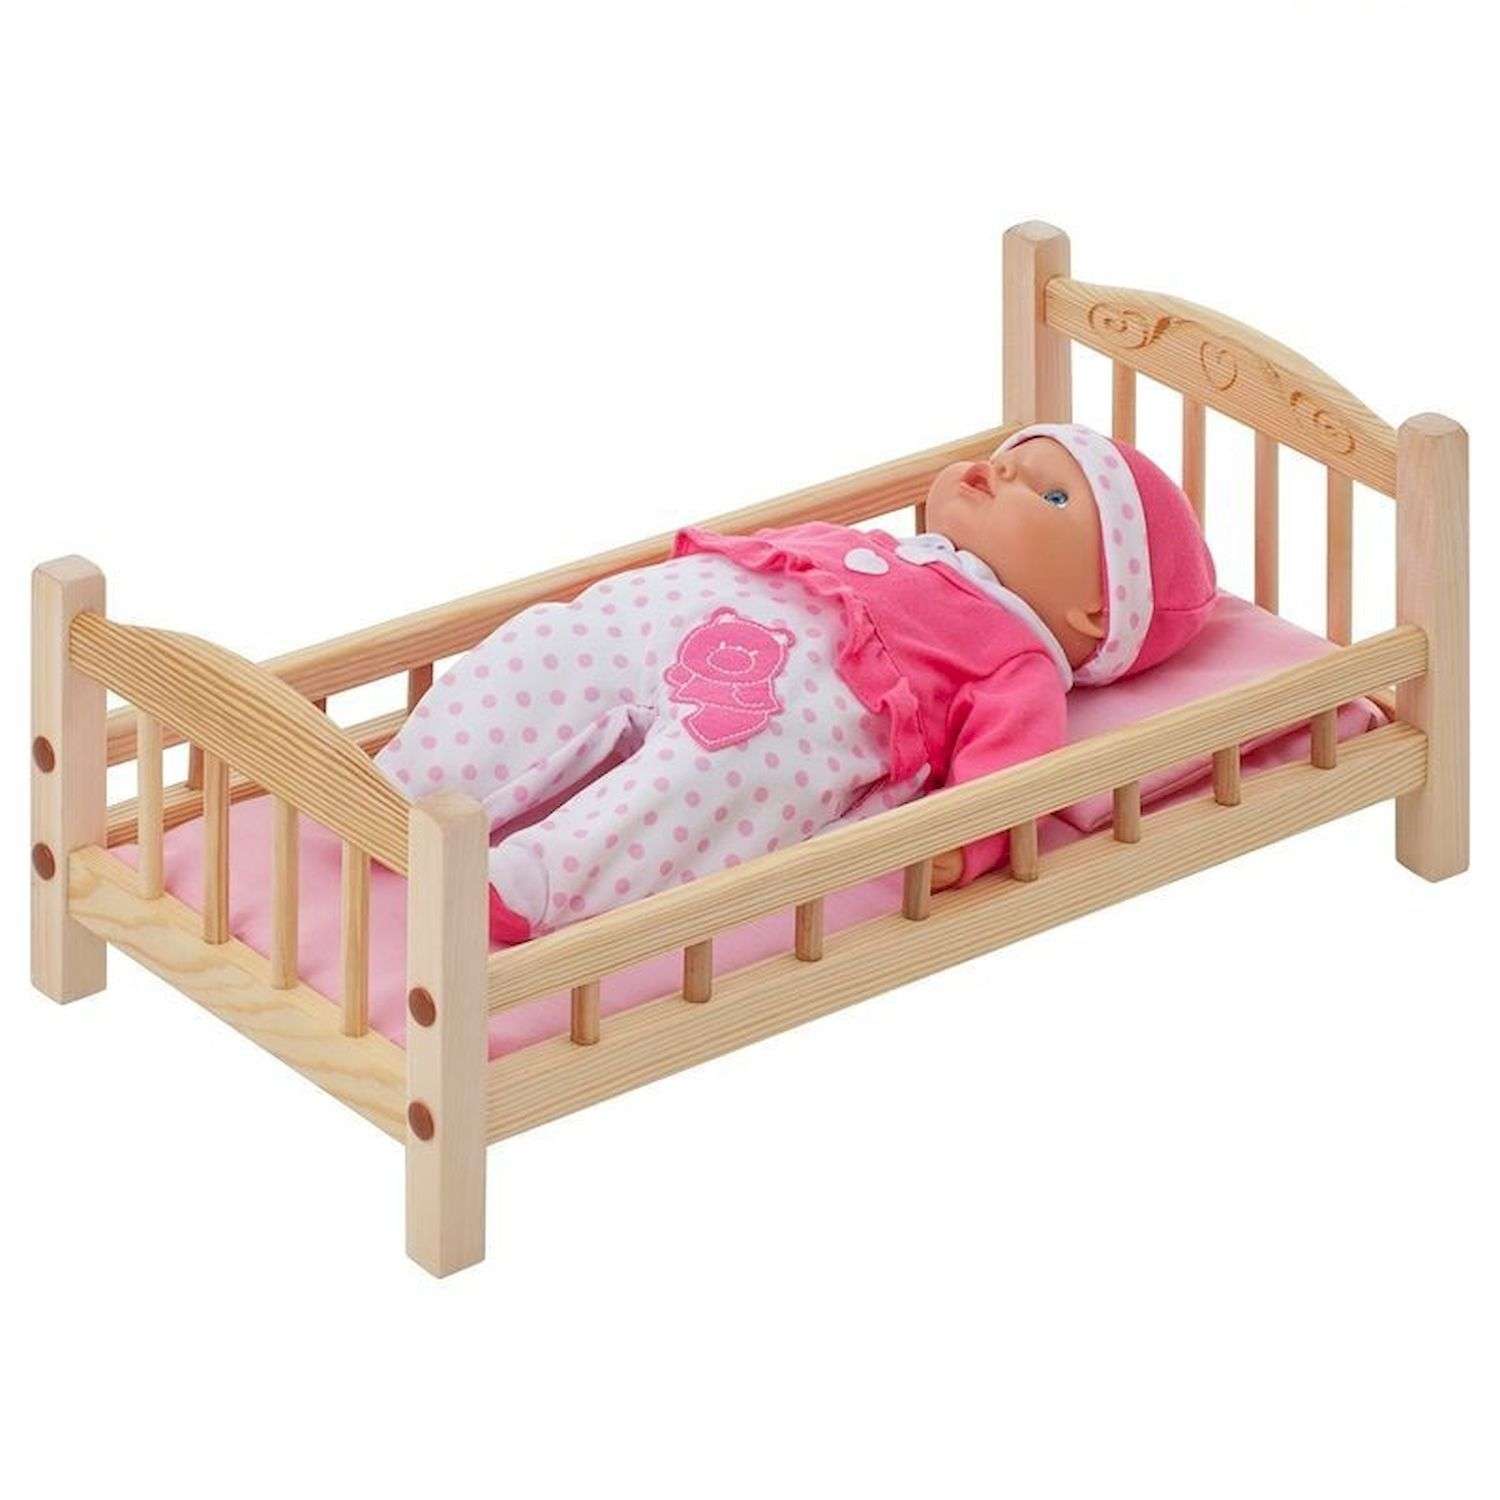 Детская кроватка для кукол. Кроватка для кукол. Игрушечная кровать. Кроватки для куколок. Детская кроватка игрушечная.